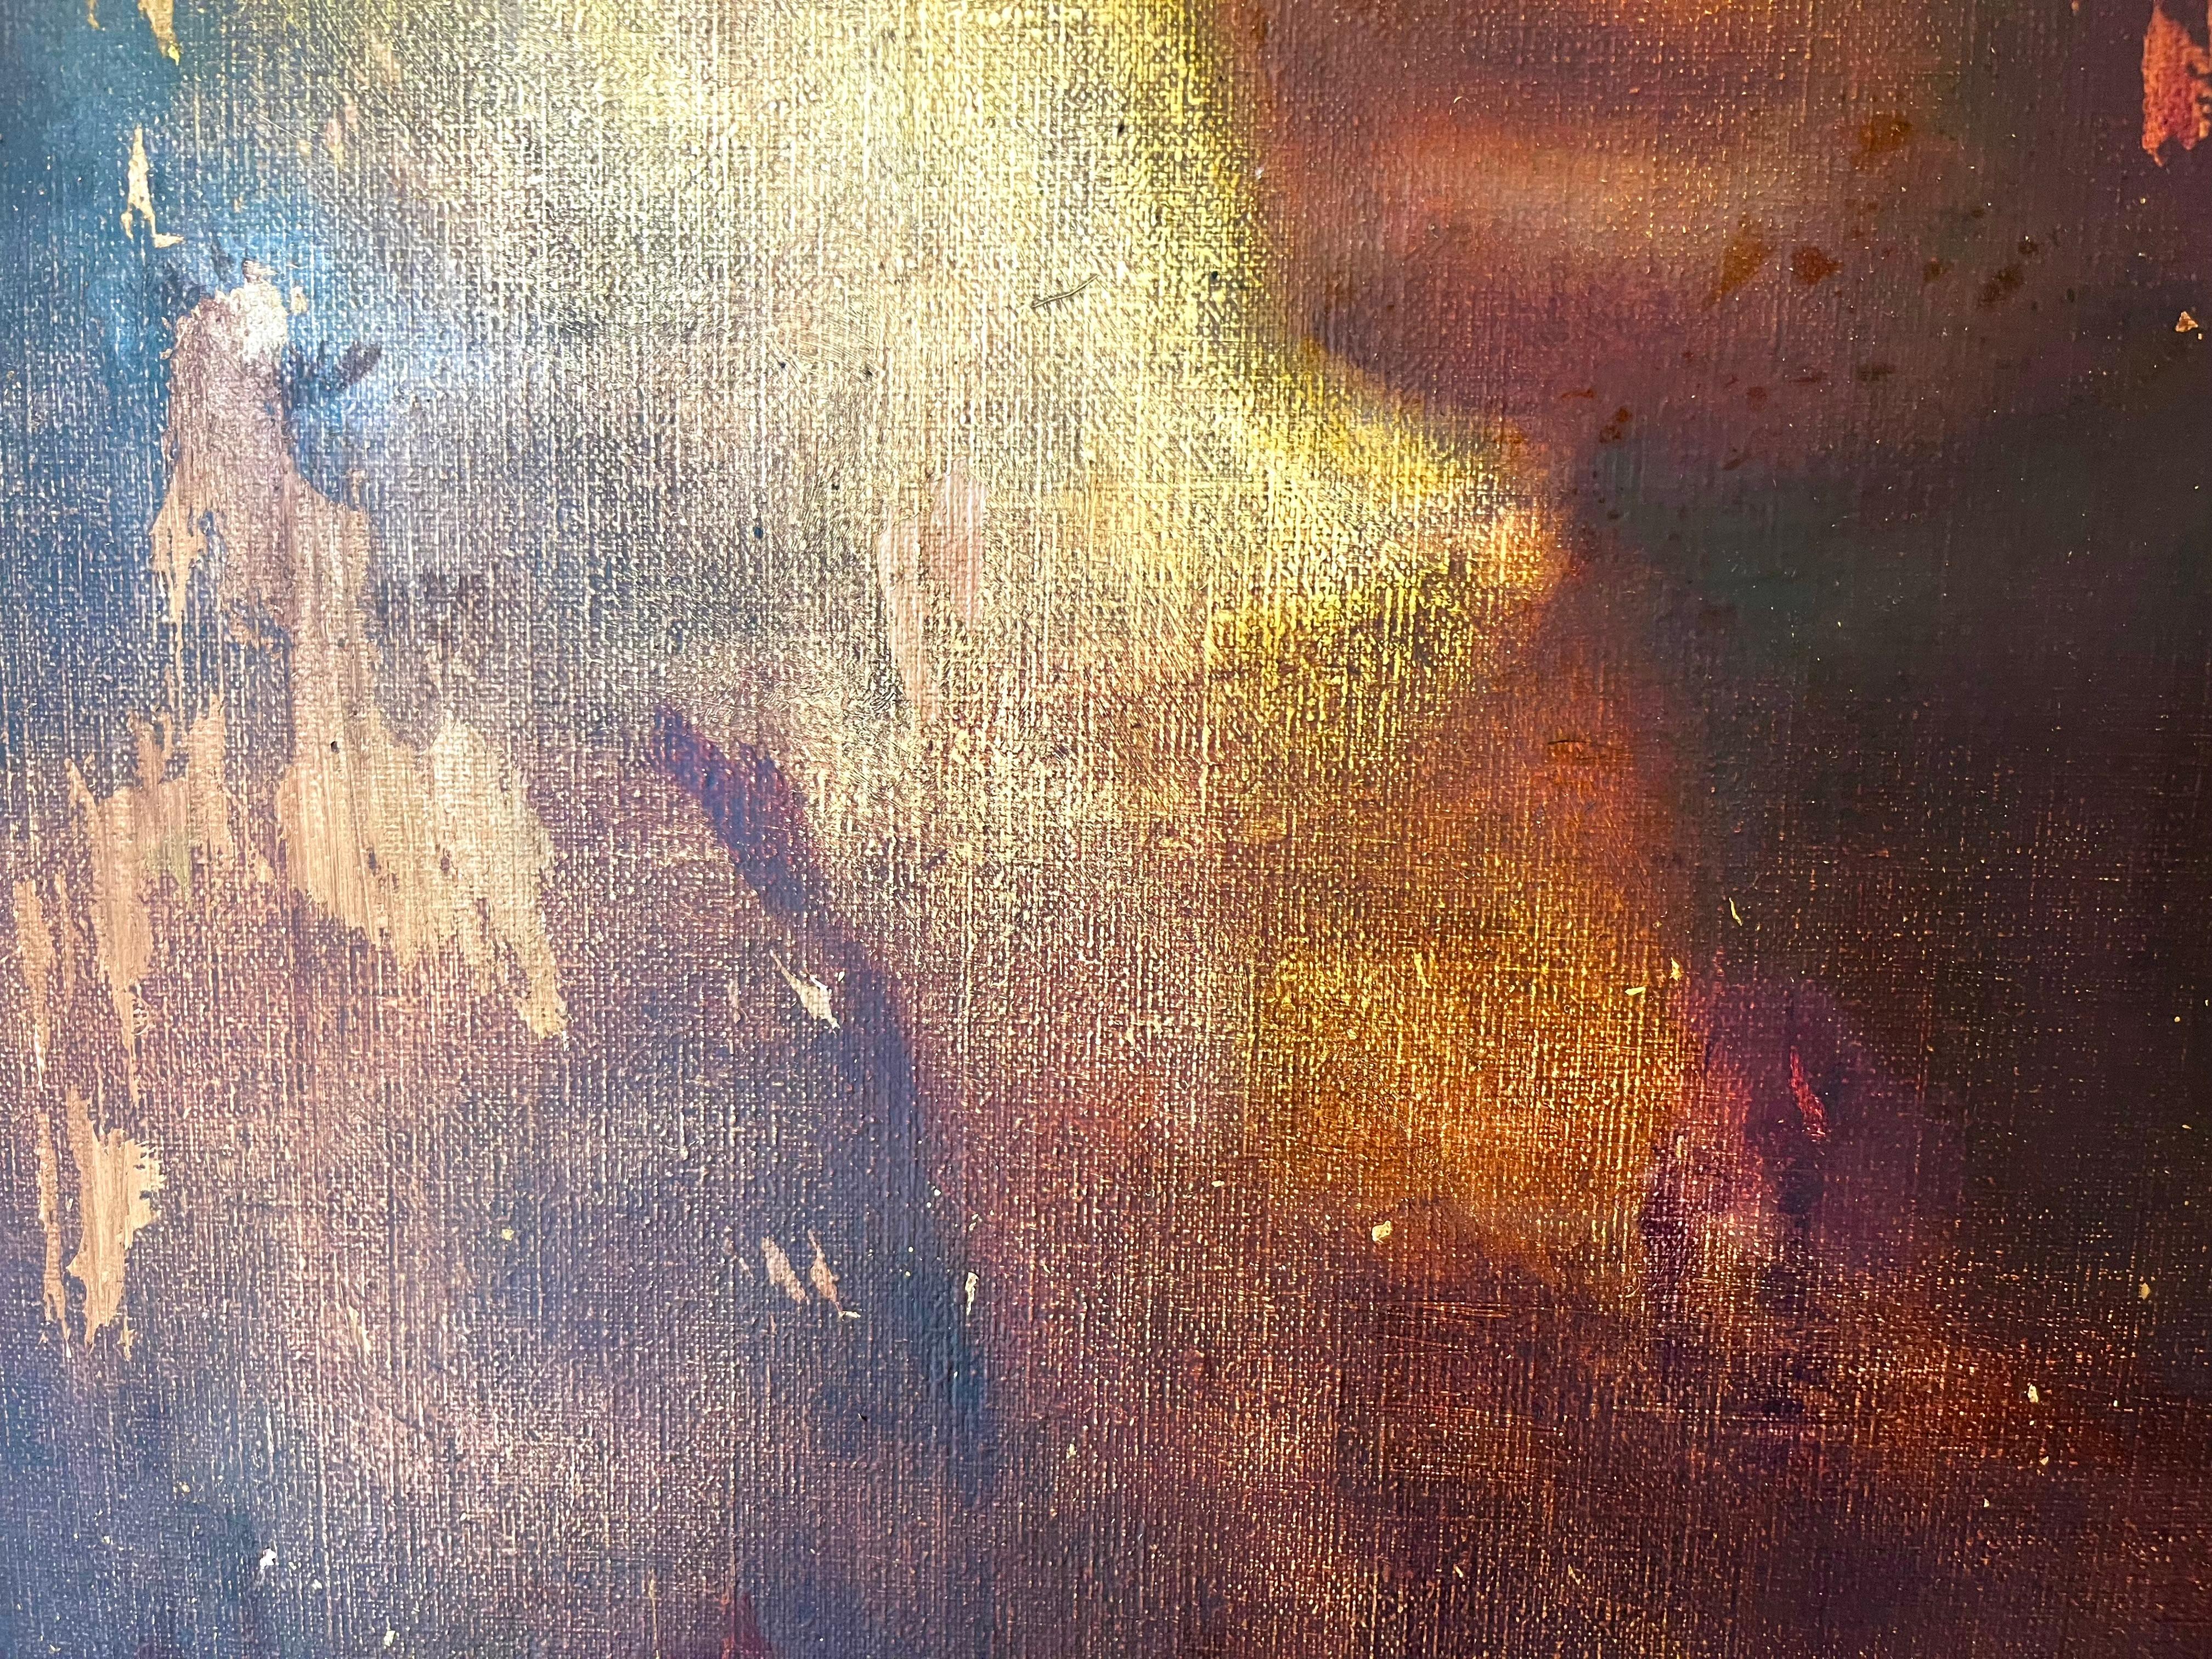 Modernes abstraktes figuratives Porträt, Öl auf Leinwand, auf gestischem Gelb und Braun  (Abstrakter Impressionismus), Painting, von Alfonso Gosalbez Berenguer